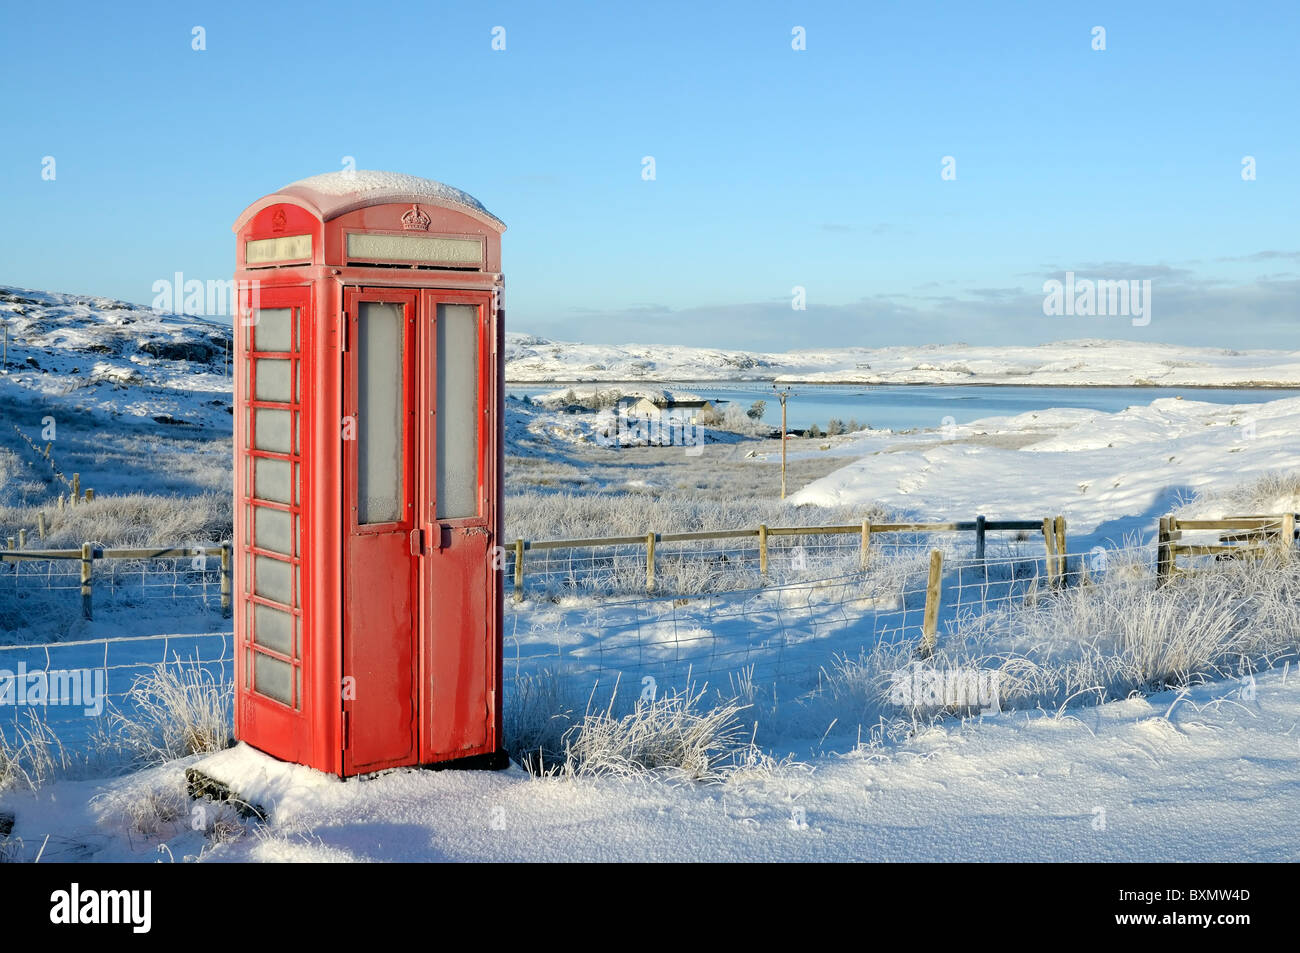 Old style red UK téléphone fort dans un cadre rural dans la neige Banque D'Images